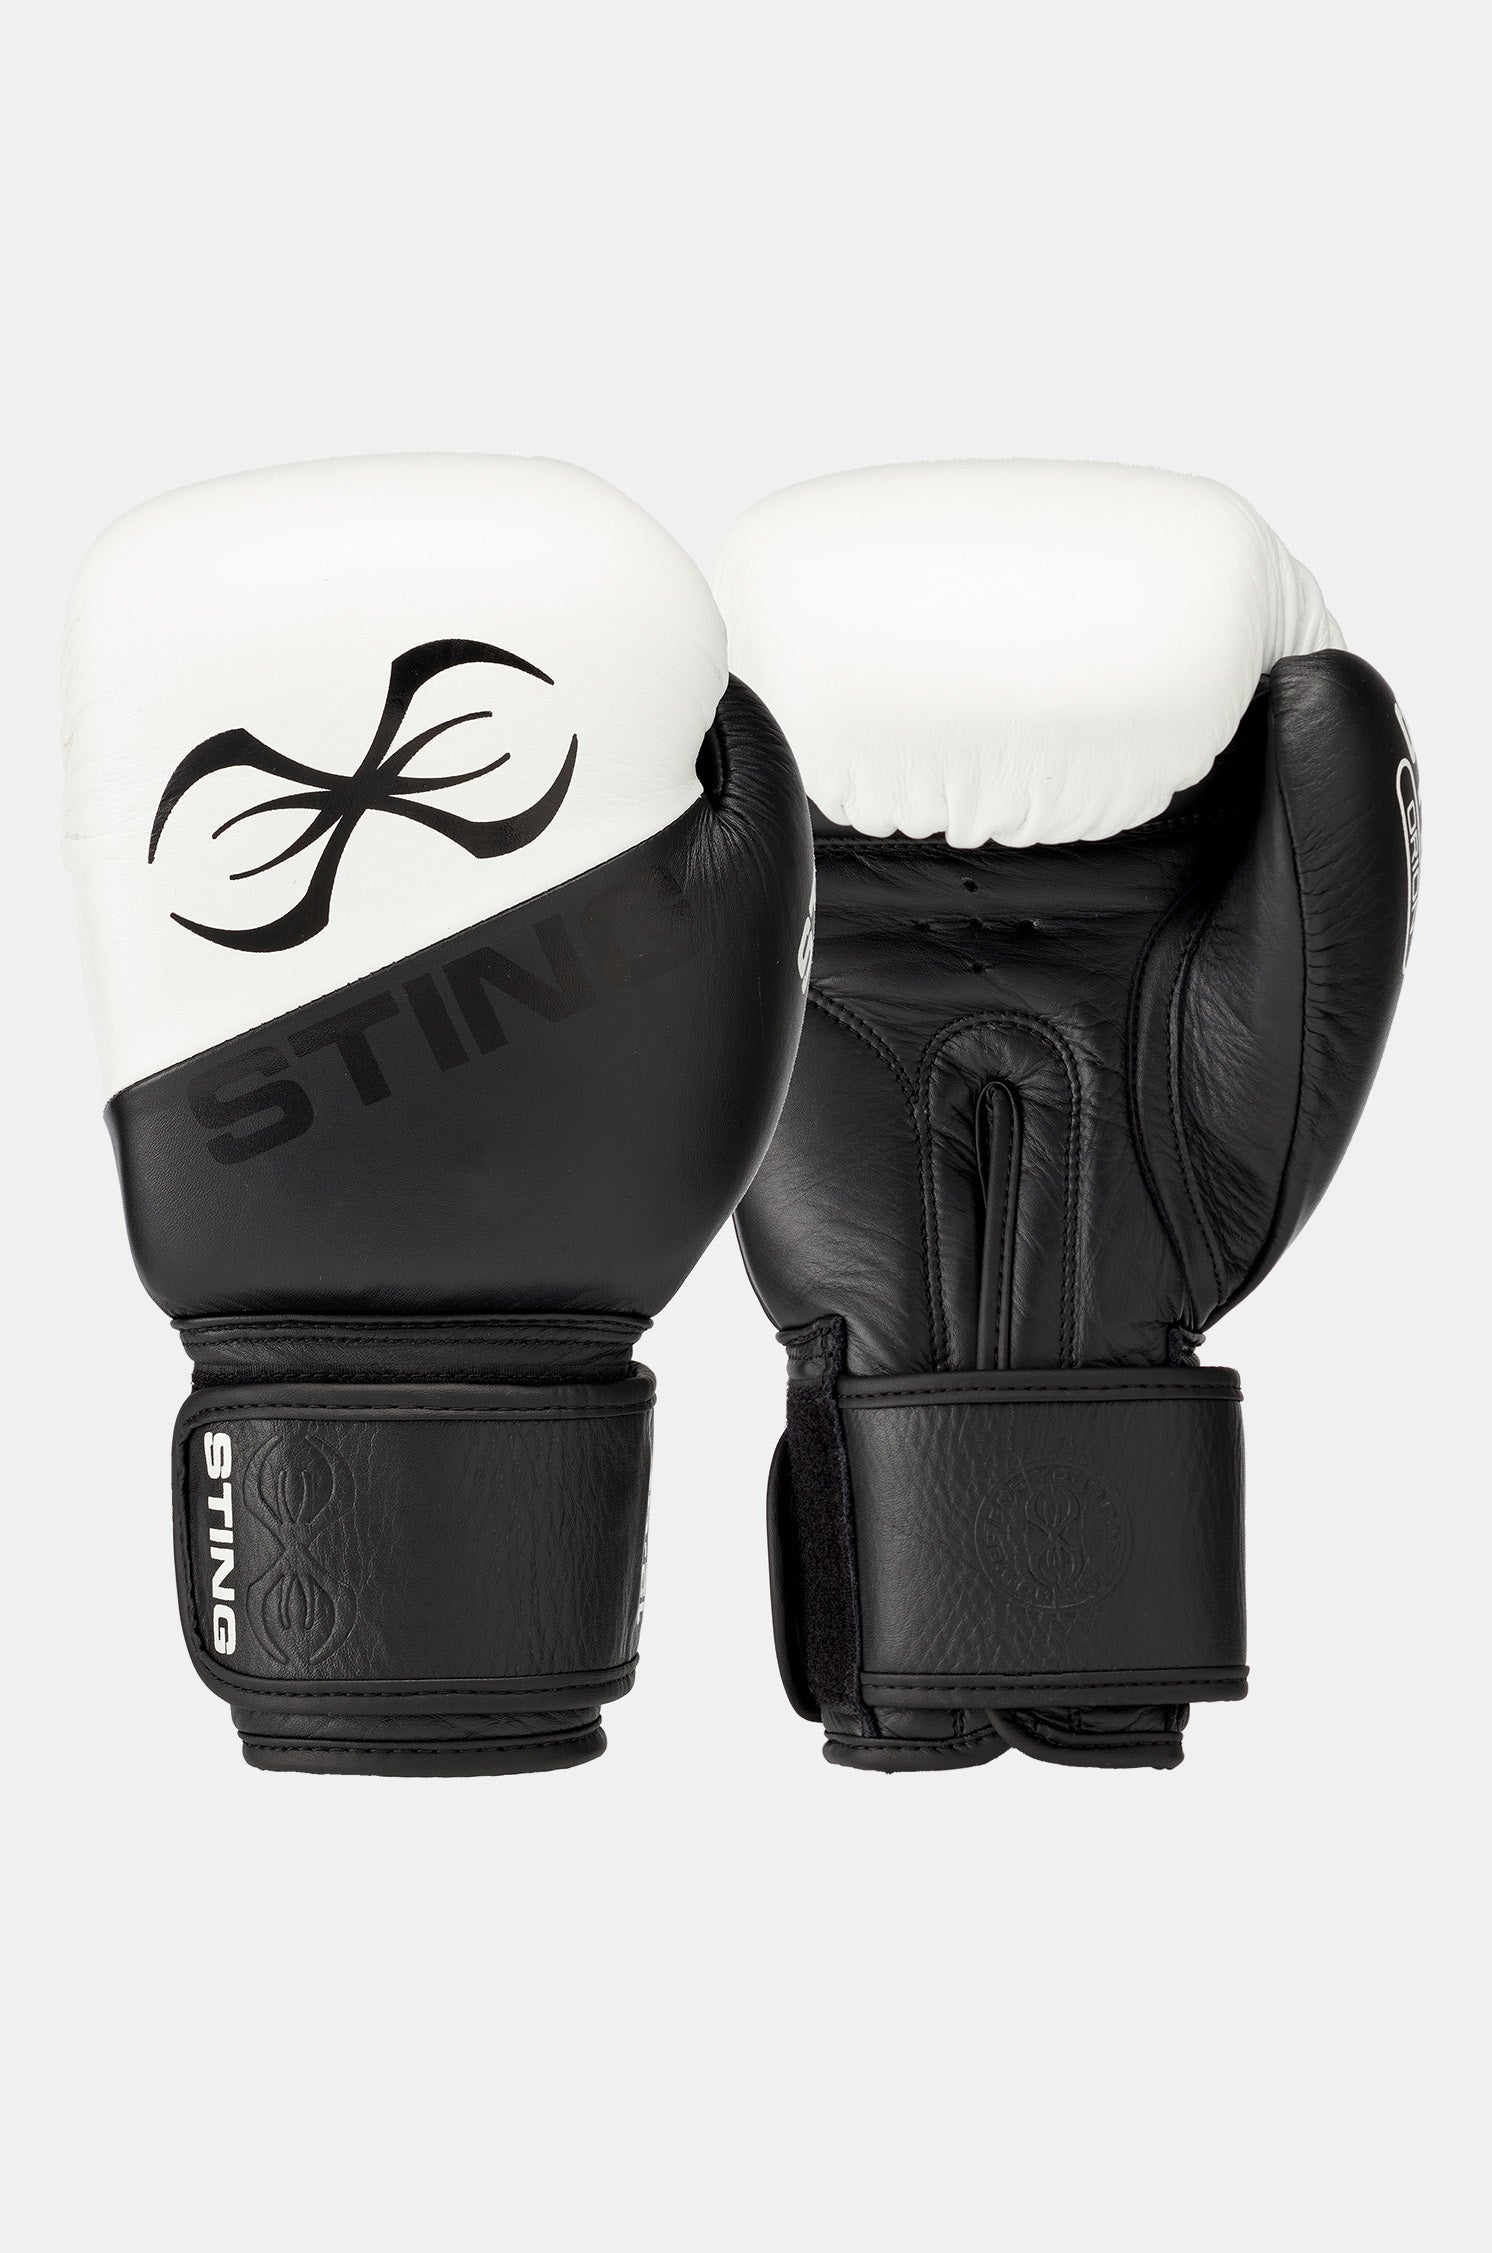 STING Orion Boxing Gloves Black White